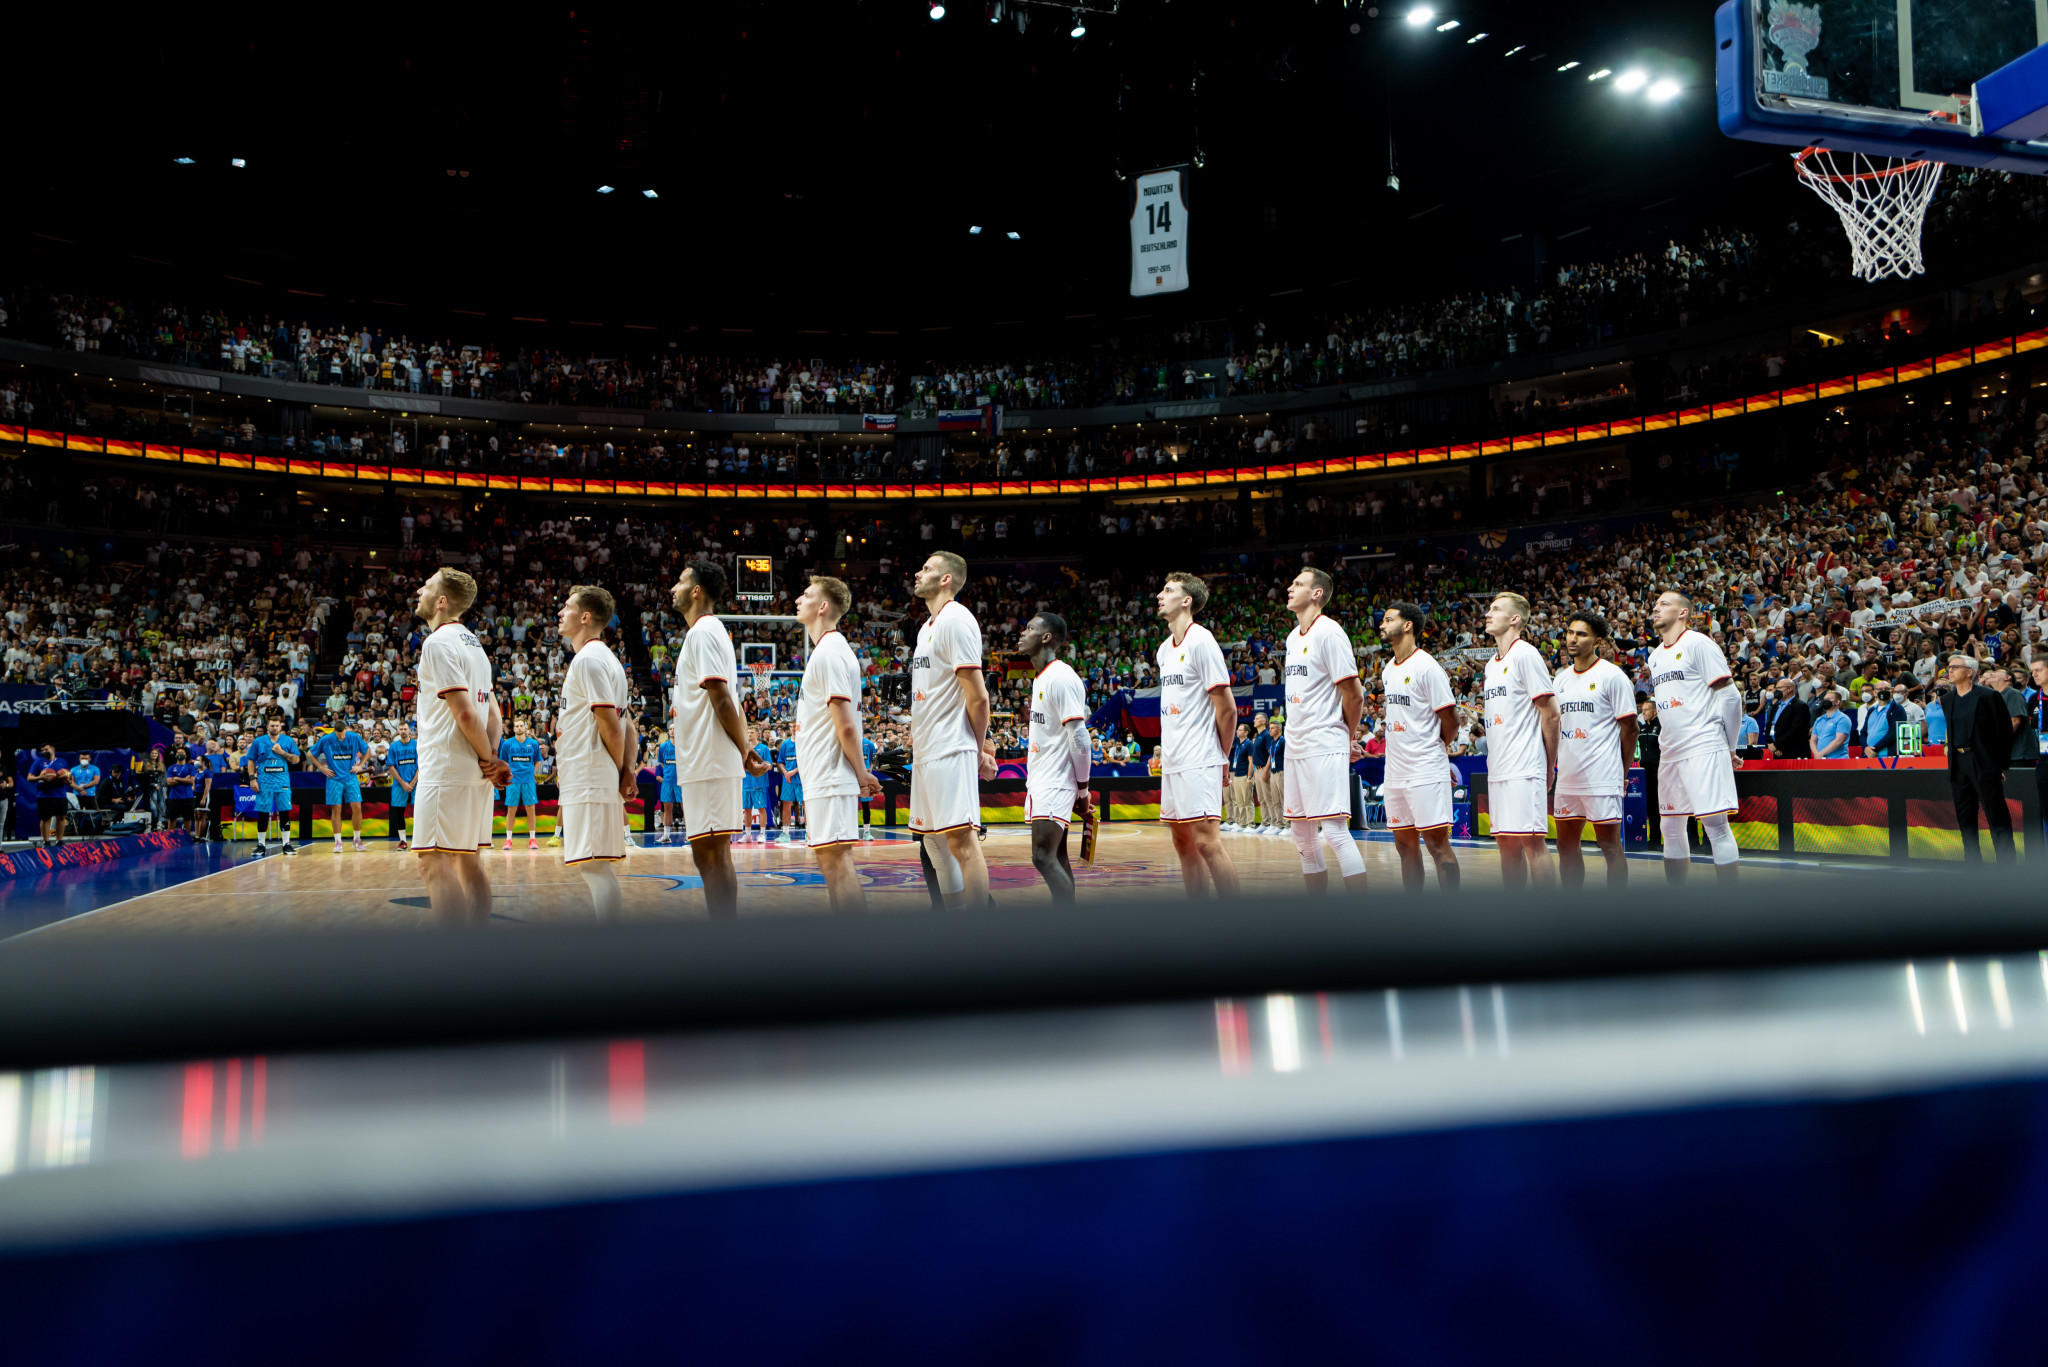 České vítězství zajišťuje postup přes skupiny EuroBasket 2022 na tři ze čtyř hostitelů